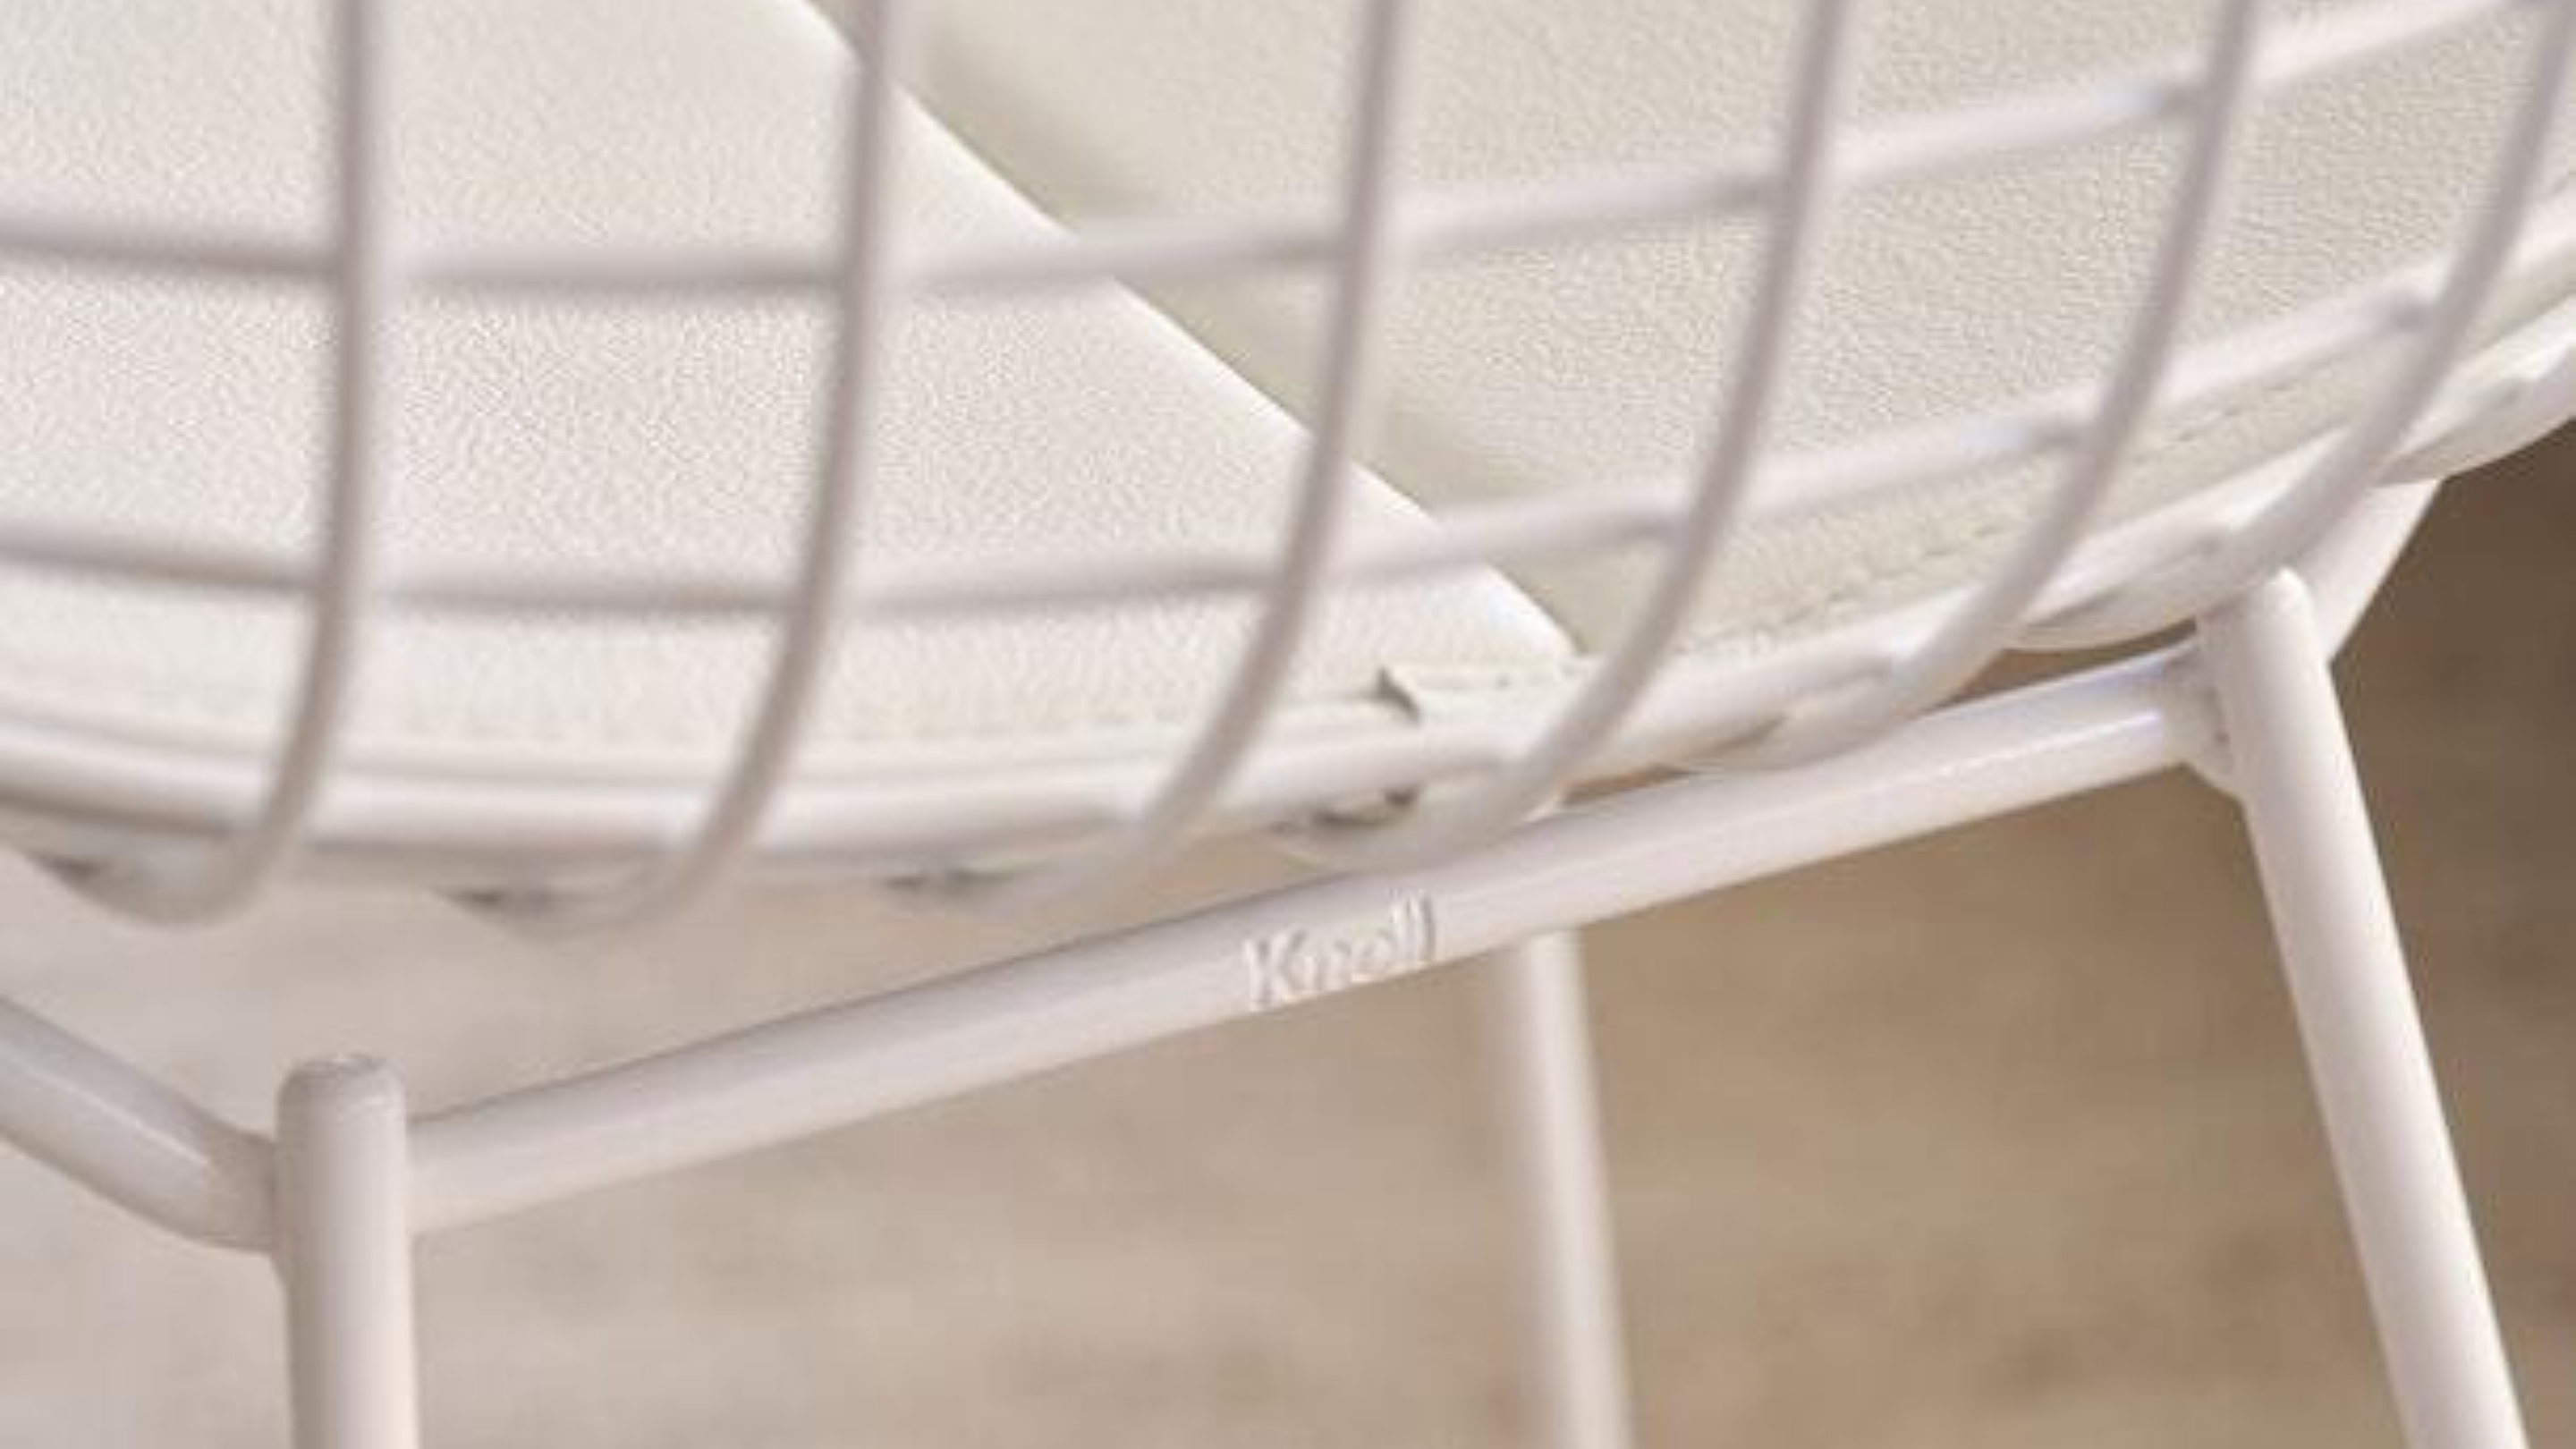 Knoll detail bertoia chair white